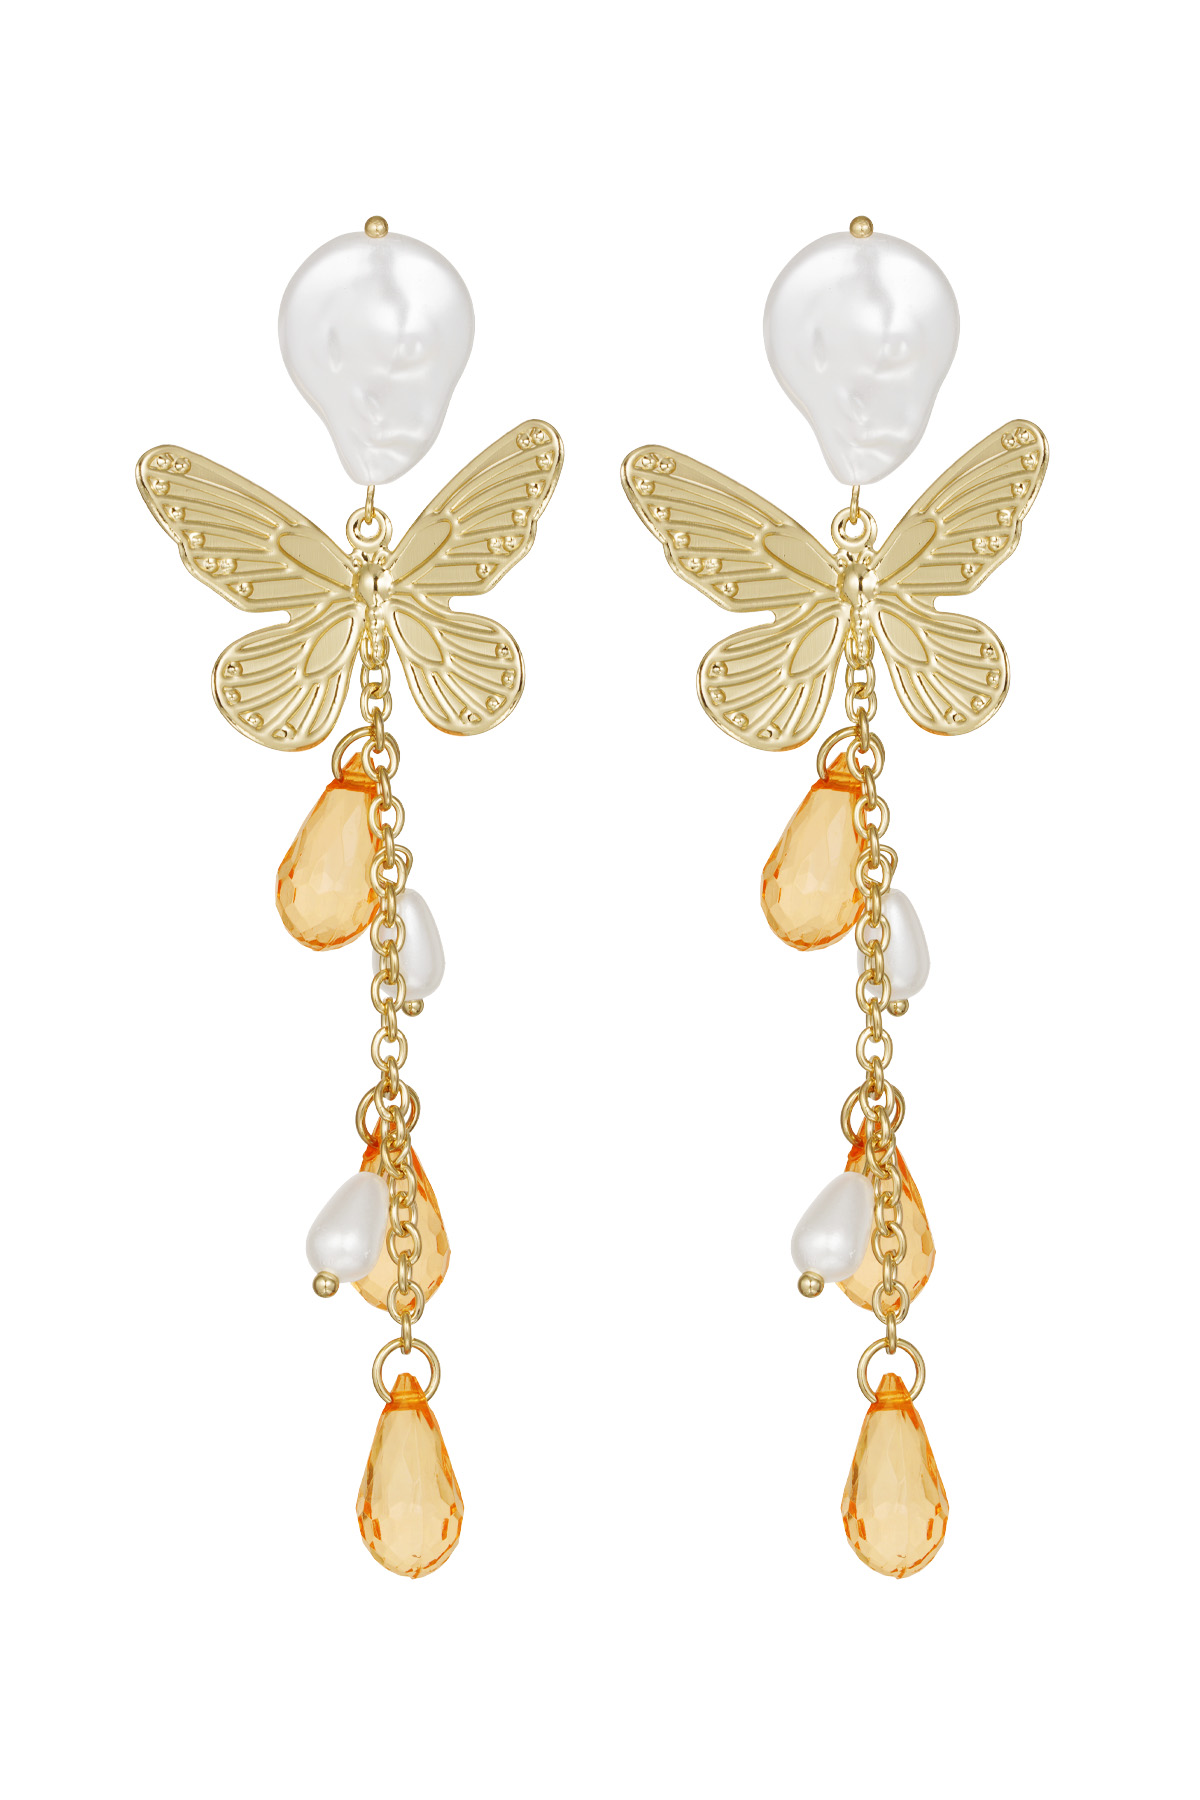 Butterfly earrings - orange 